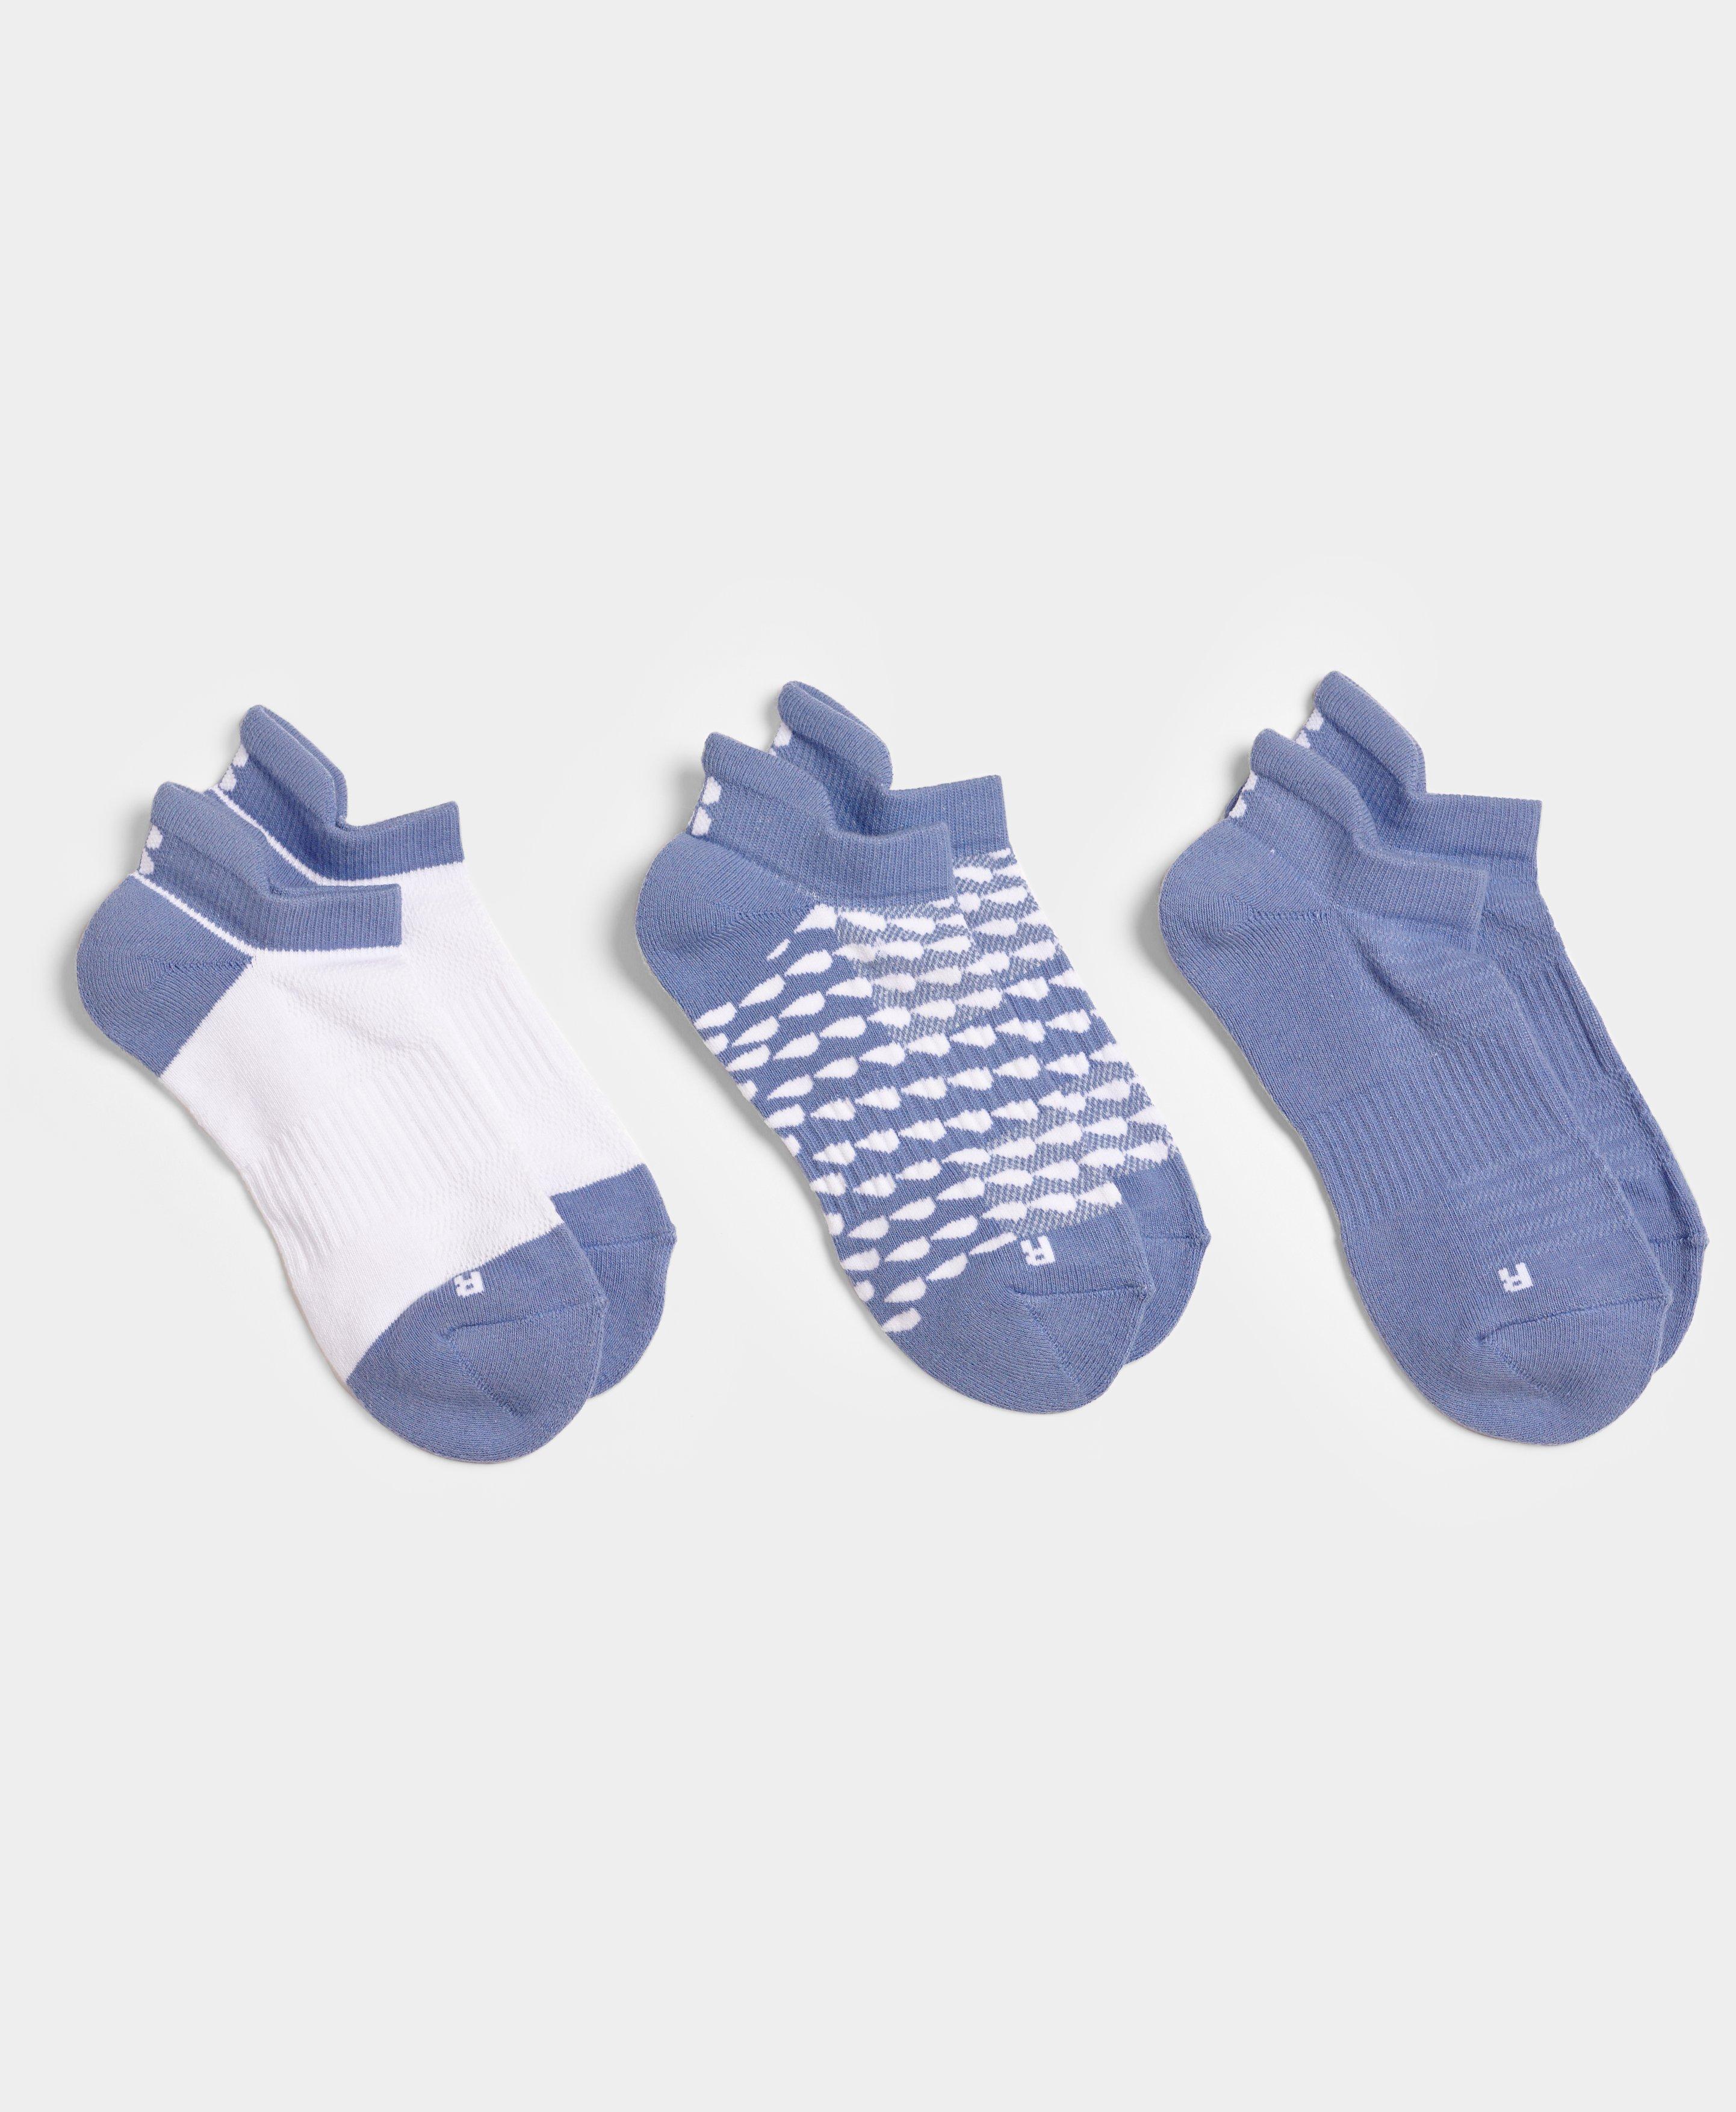 Workout Trainer Socks 3 Pack - Fluid Blue | Women's Sports Socks ...